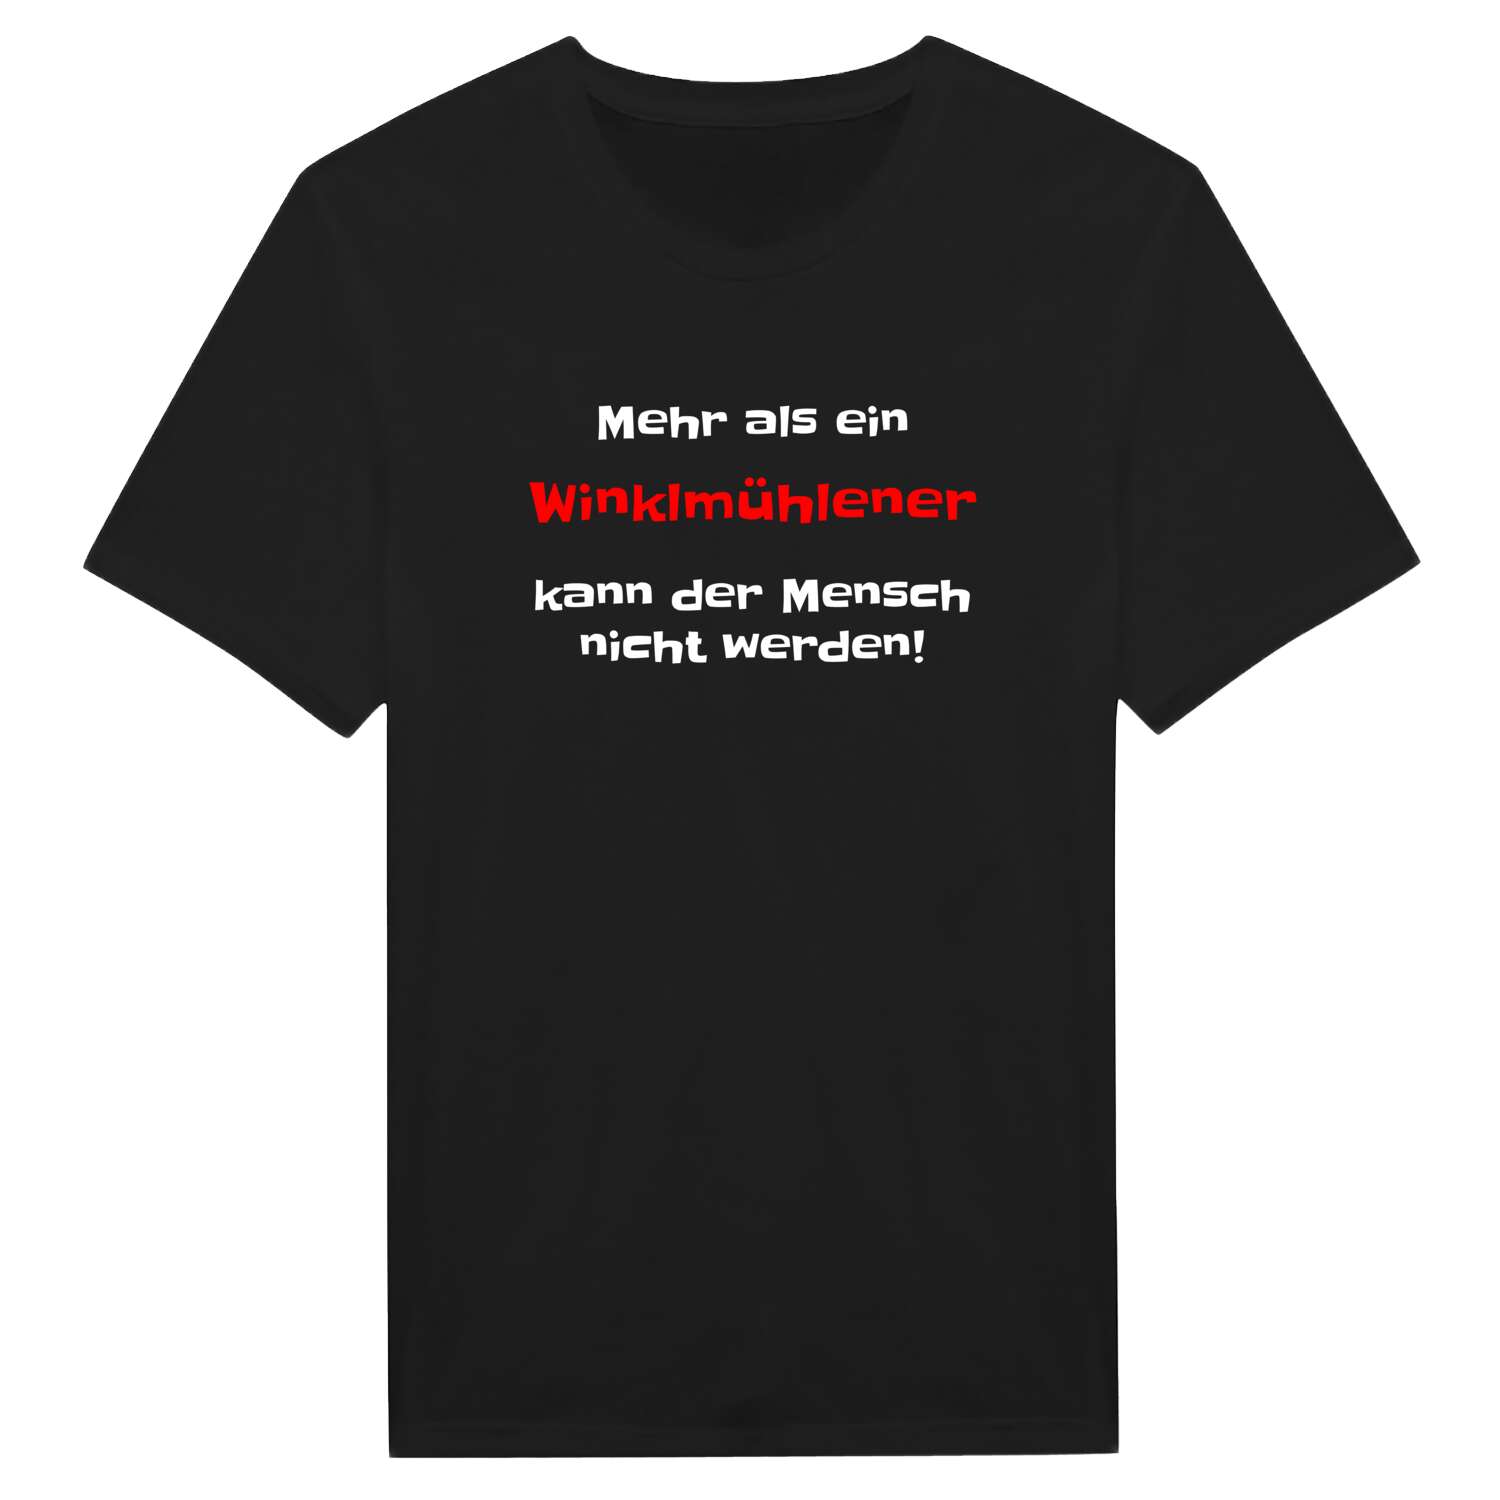 Winklmühle T-Shirt »Mehr als ein«